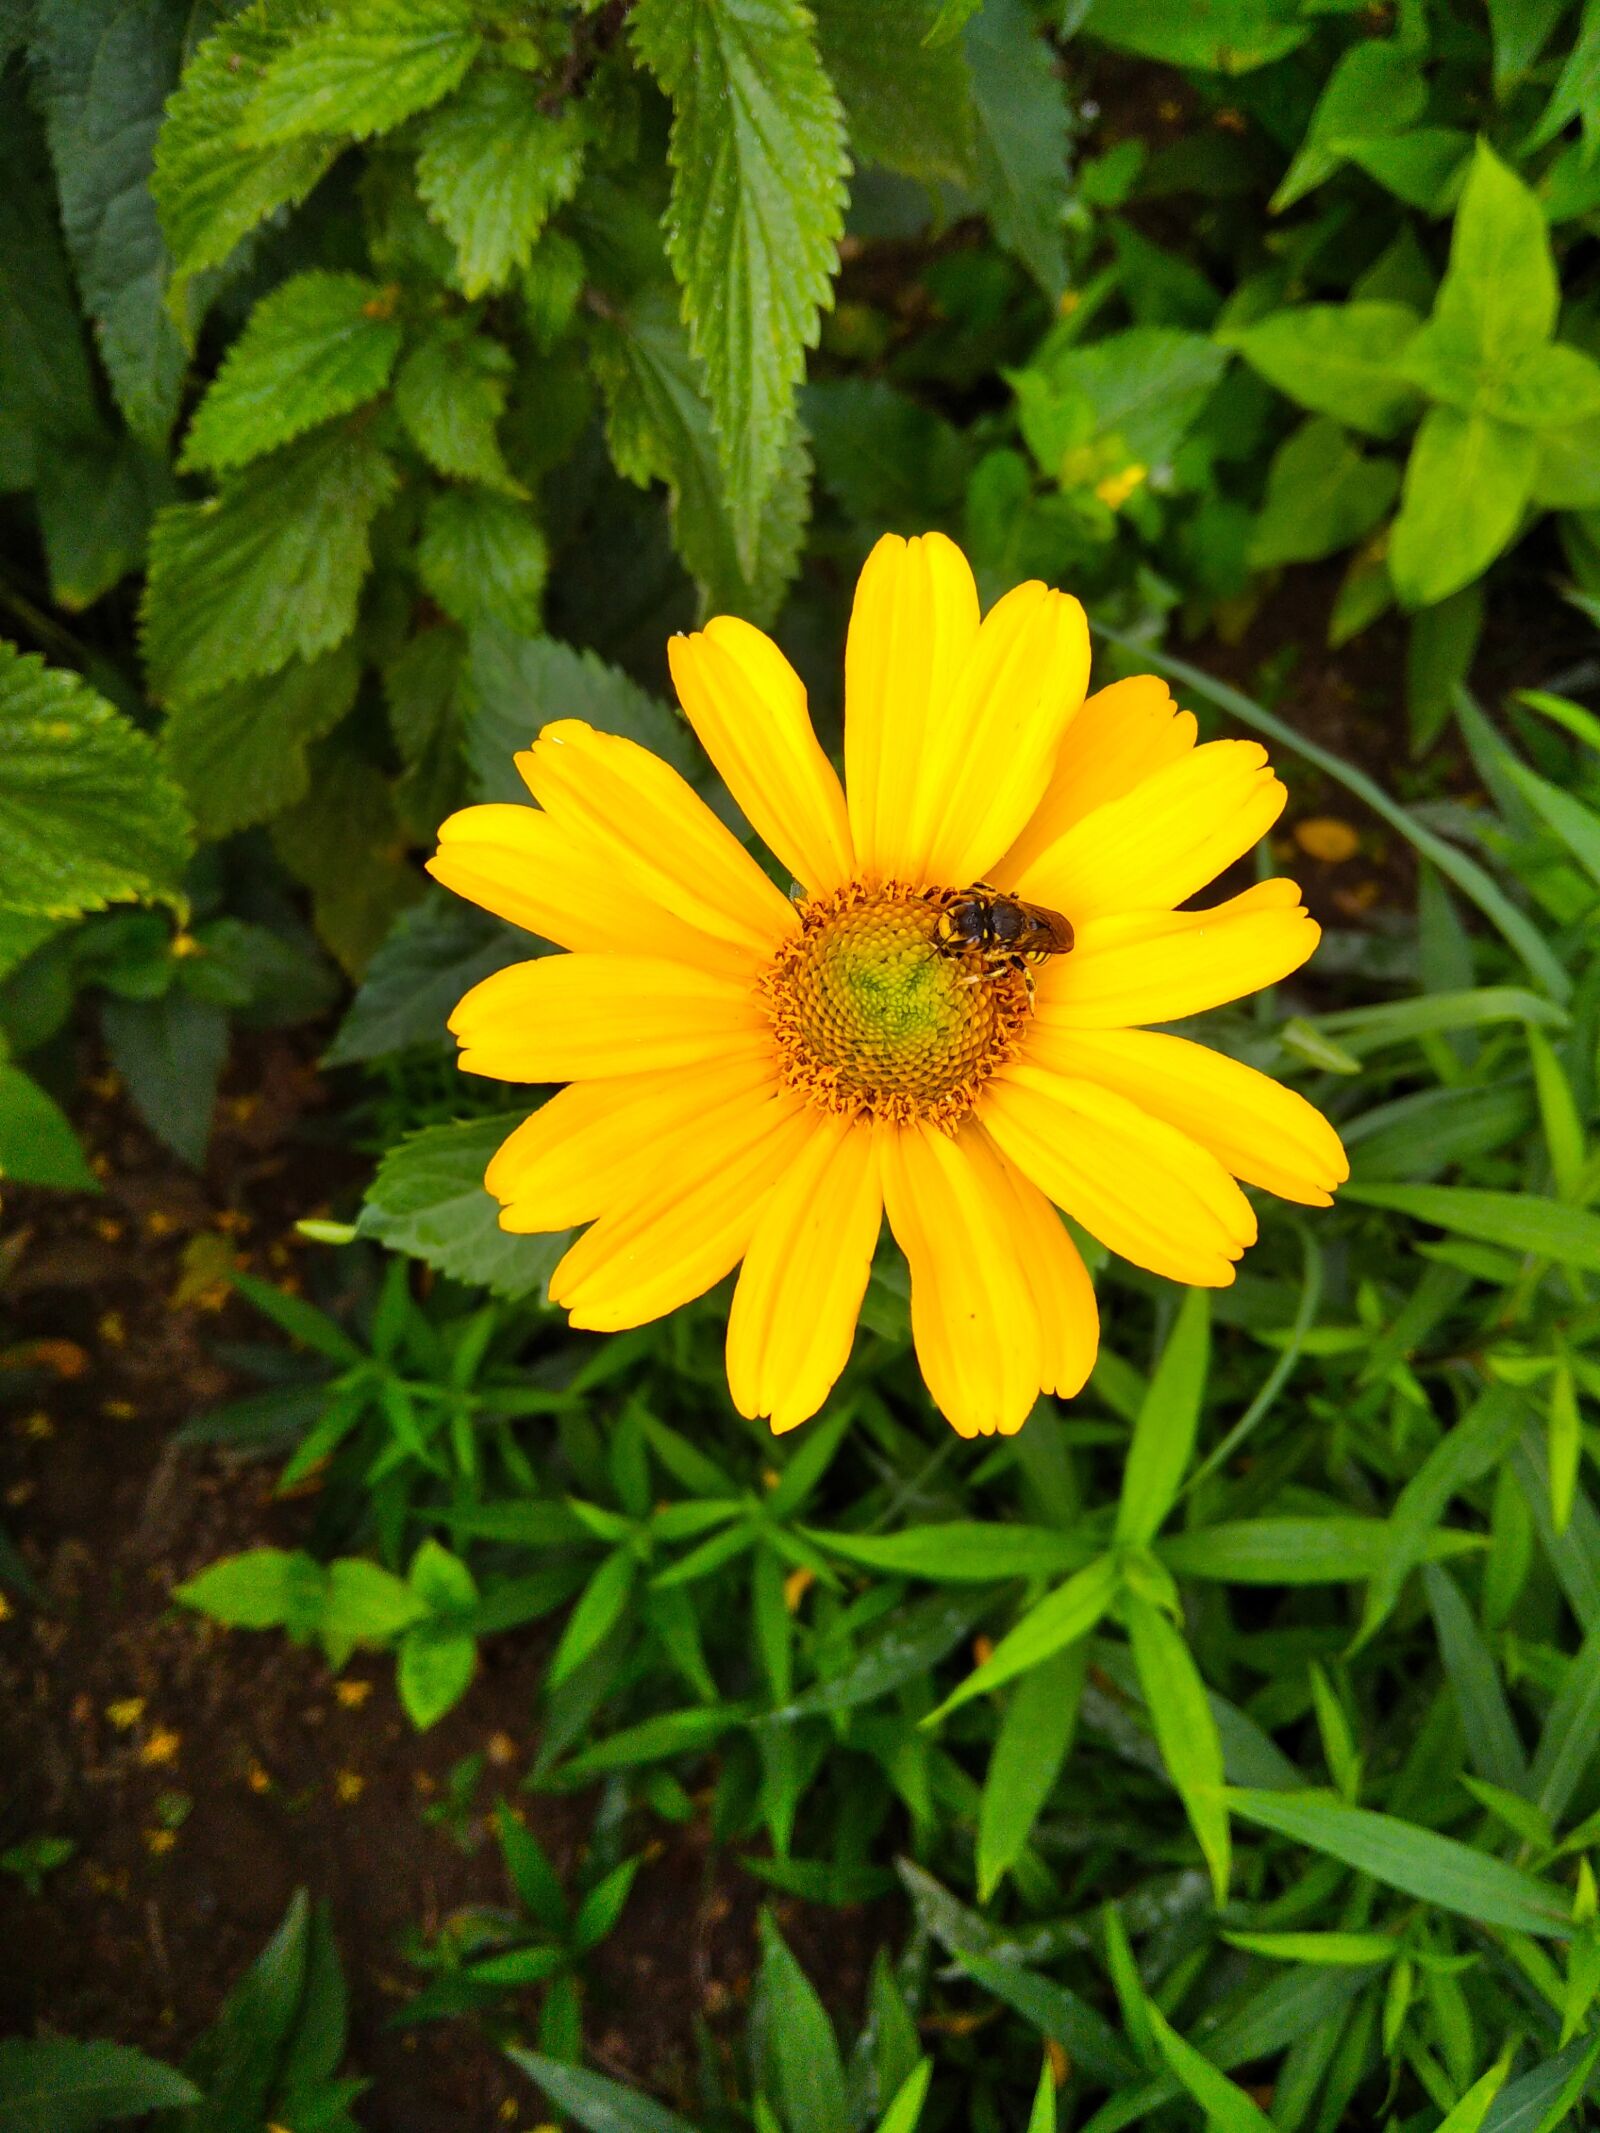 Xiaomi Redmi 8 sample photo. Flower, natural, garden photography